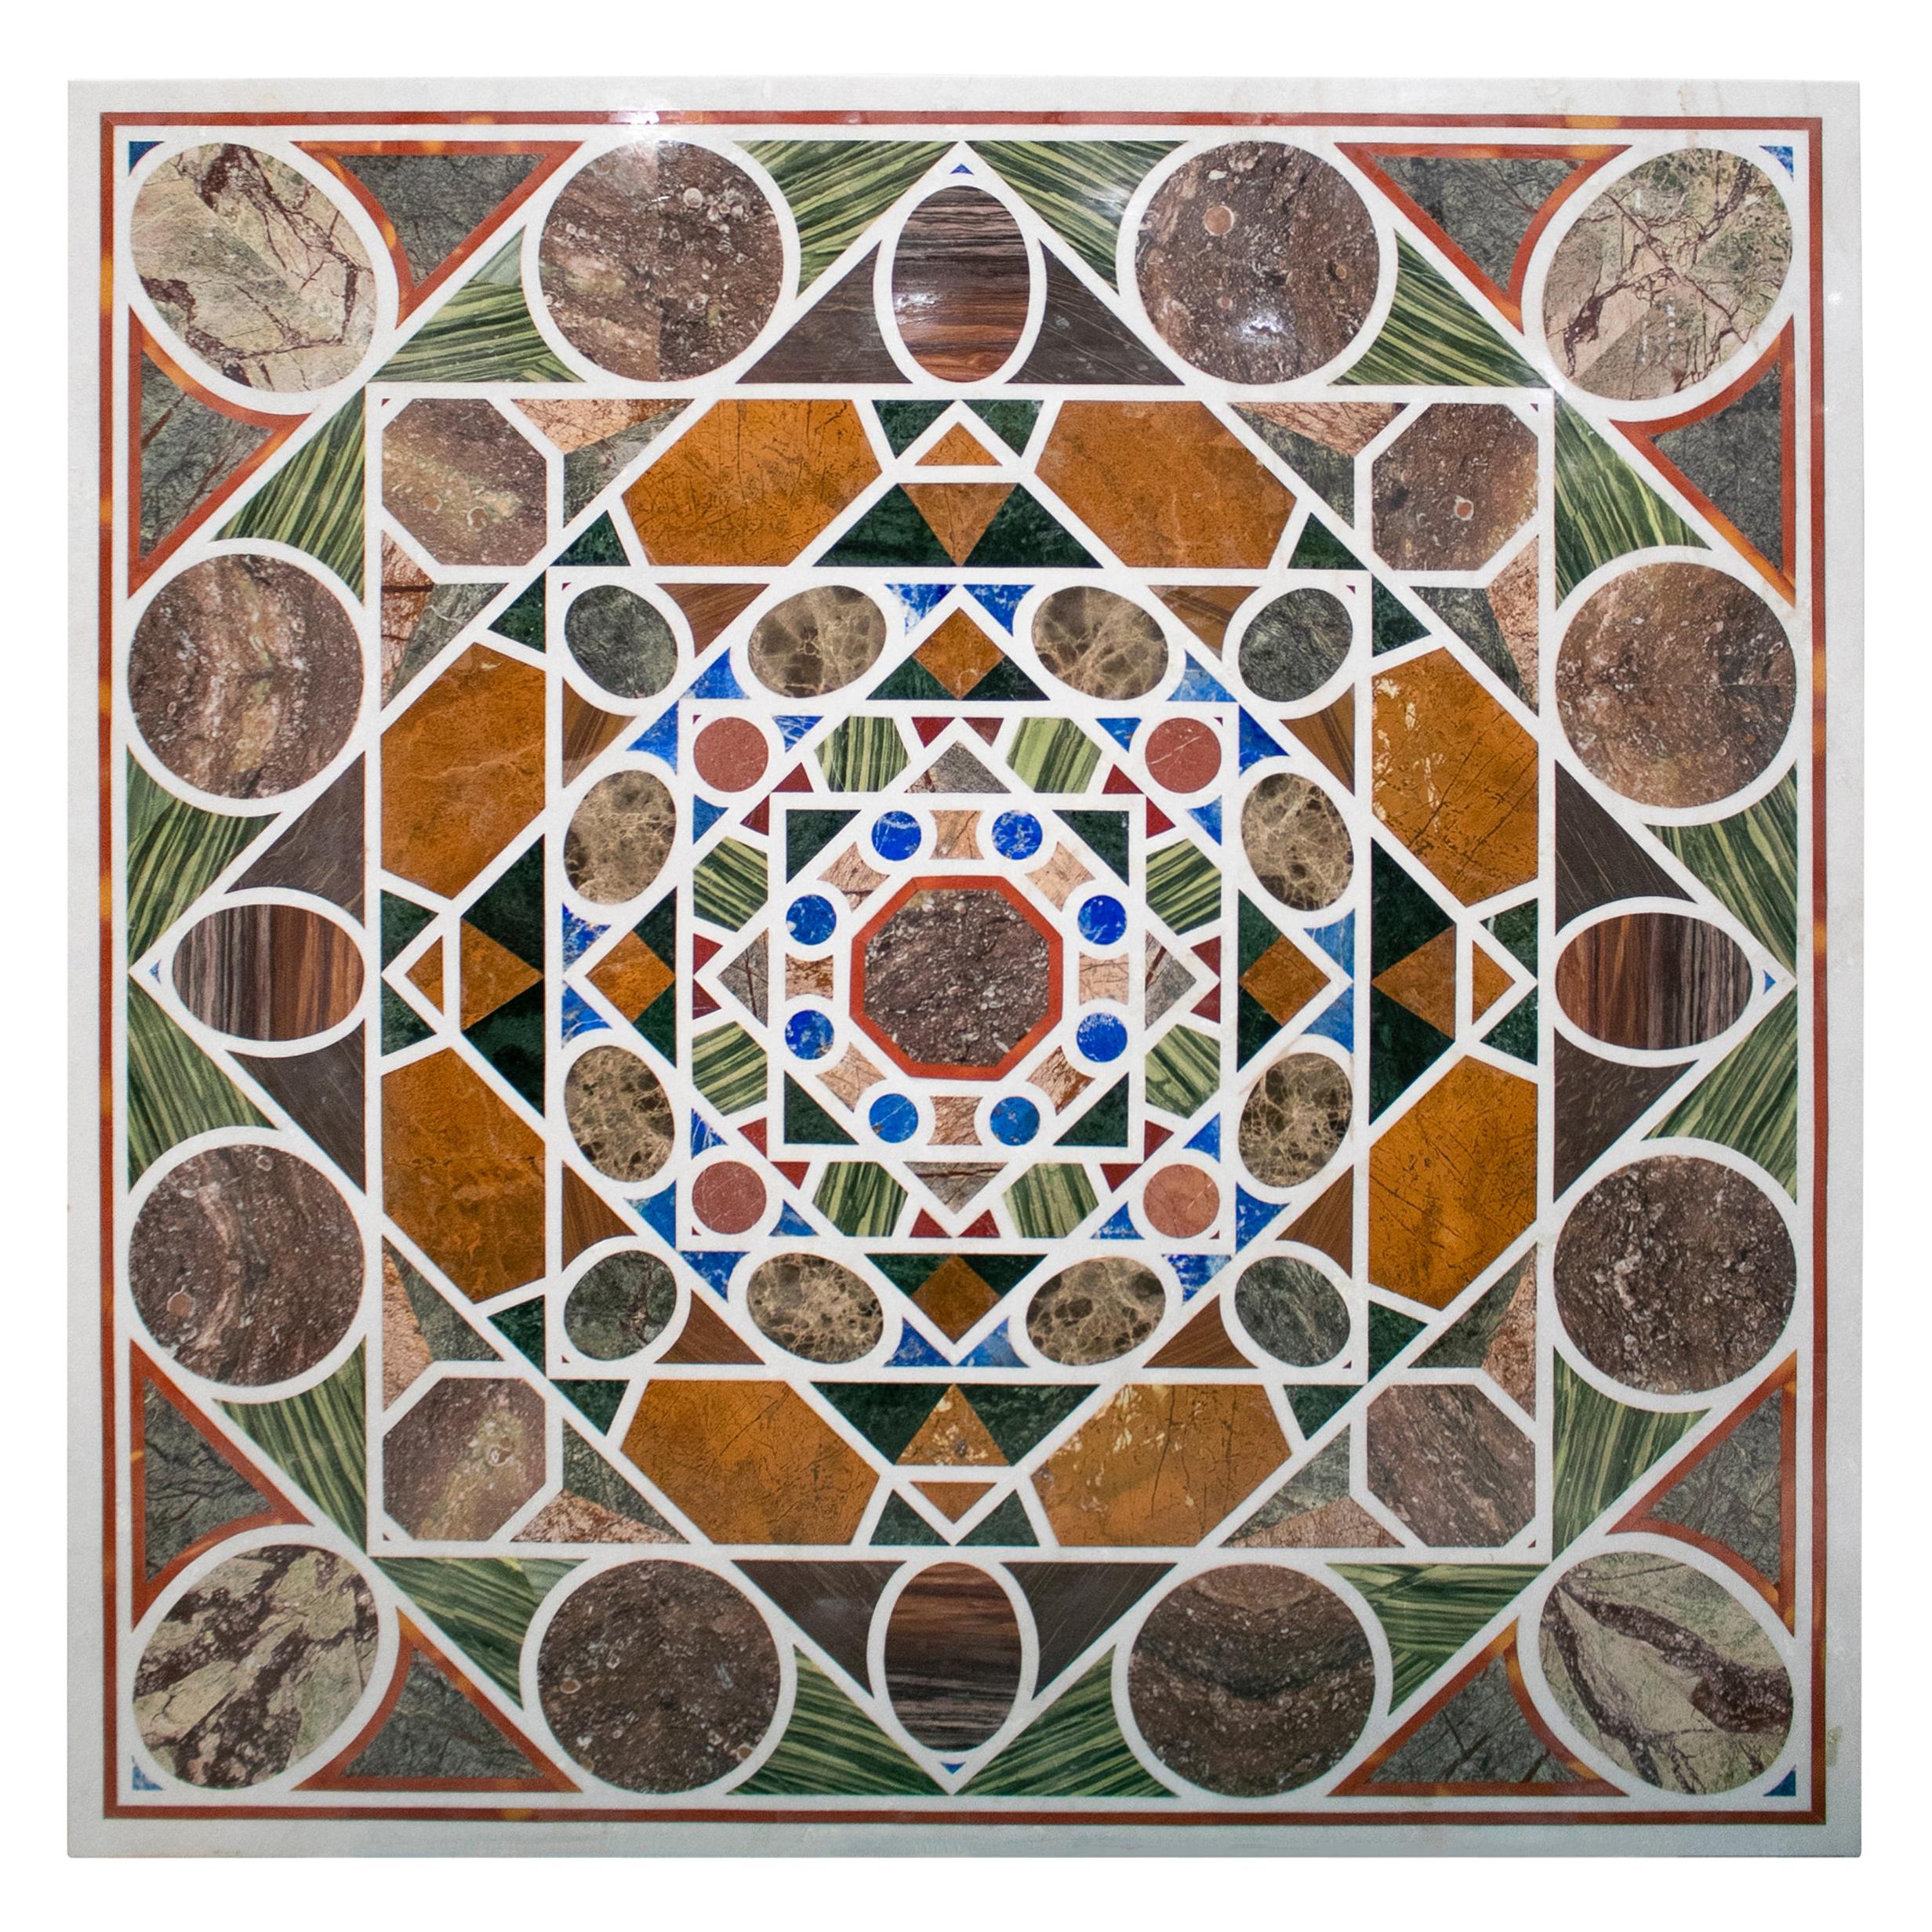 Quadratische Pietre Dure-Tischplatte aus weißem Marmor und Lapislazuli mit geometrischem Mosaik